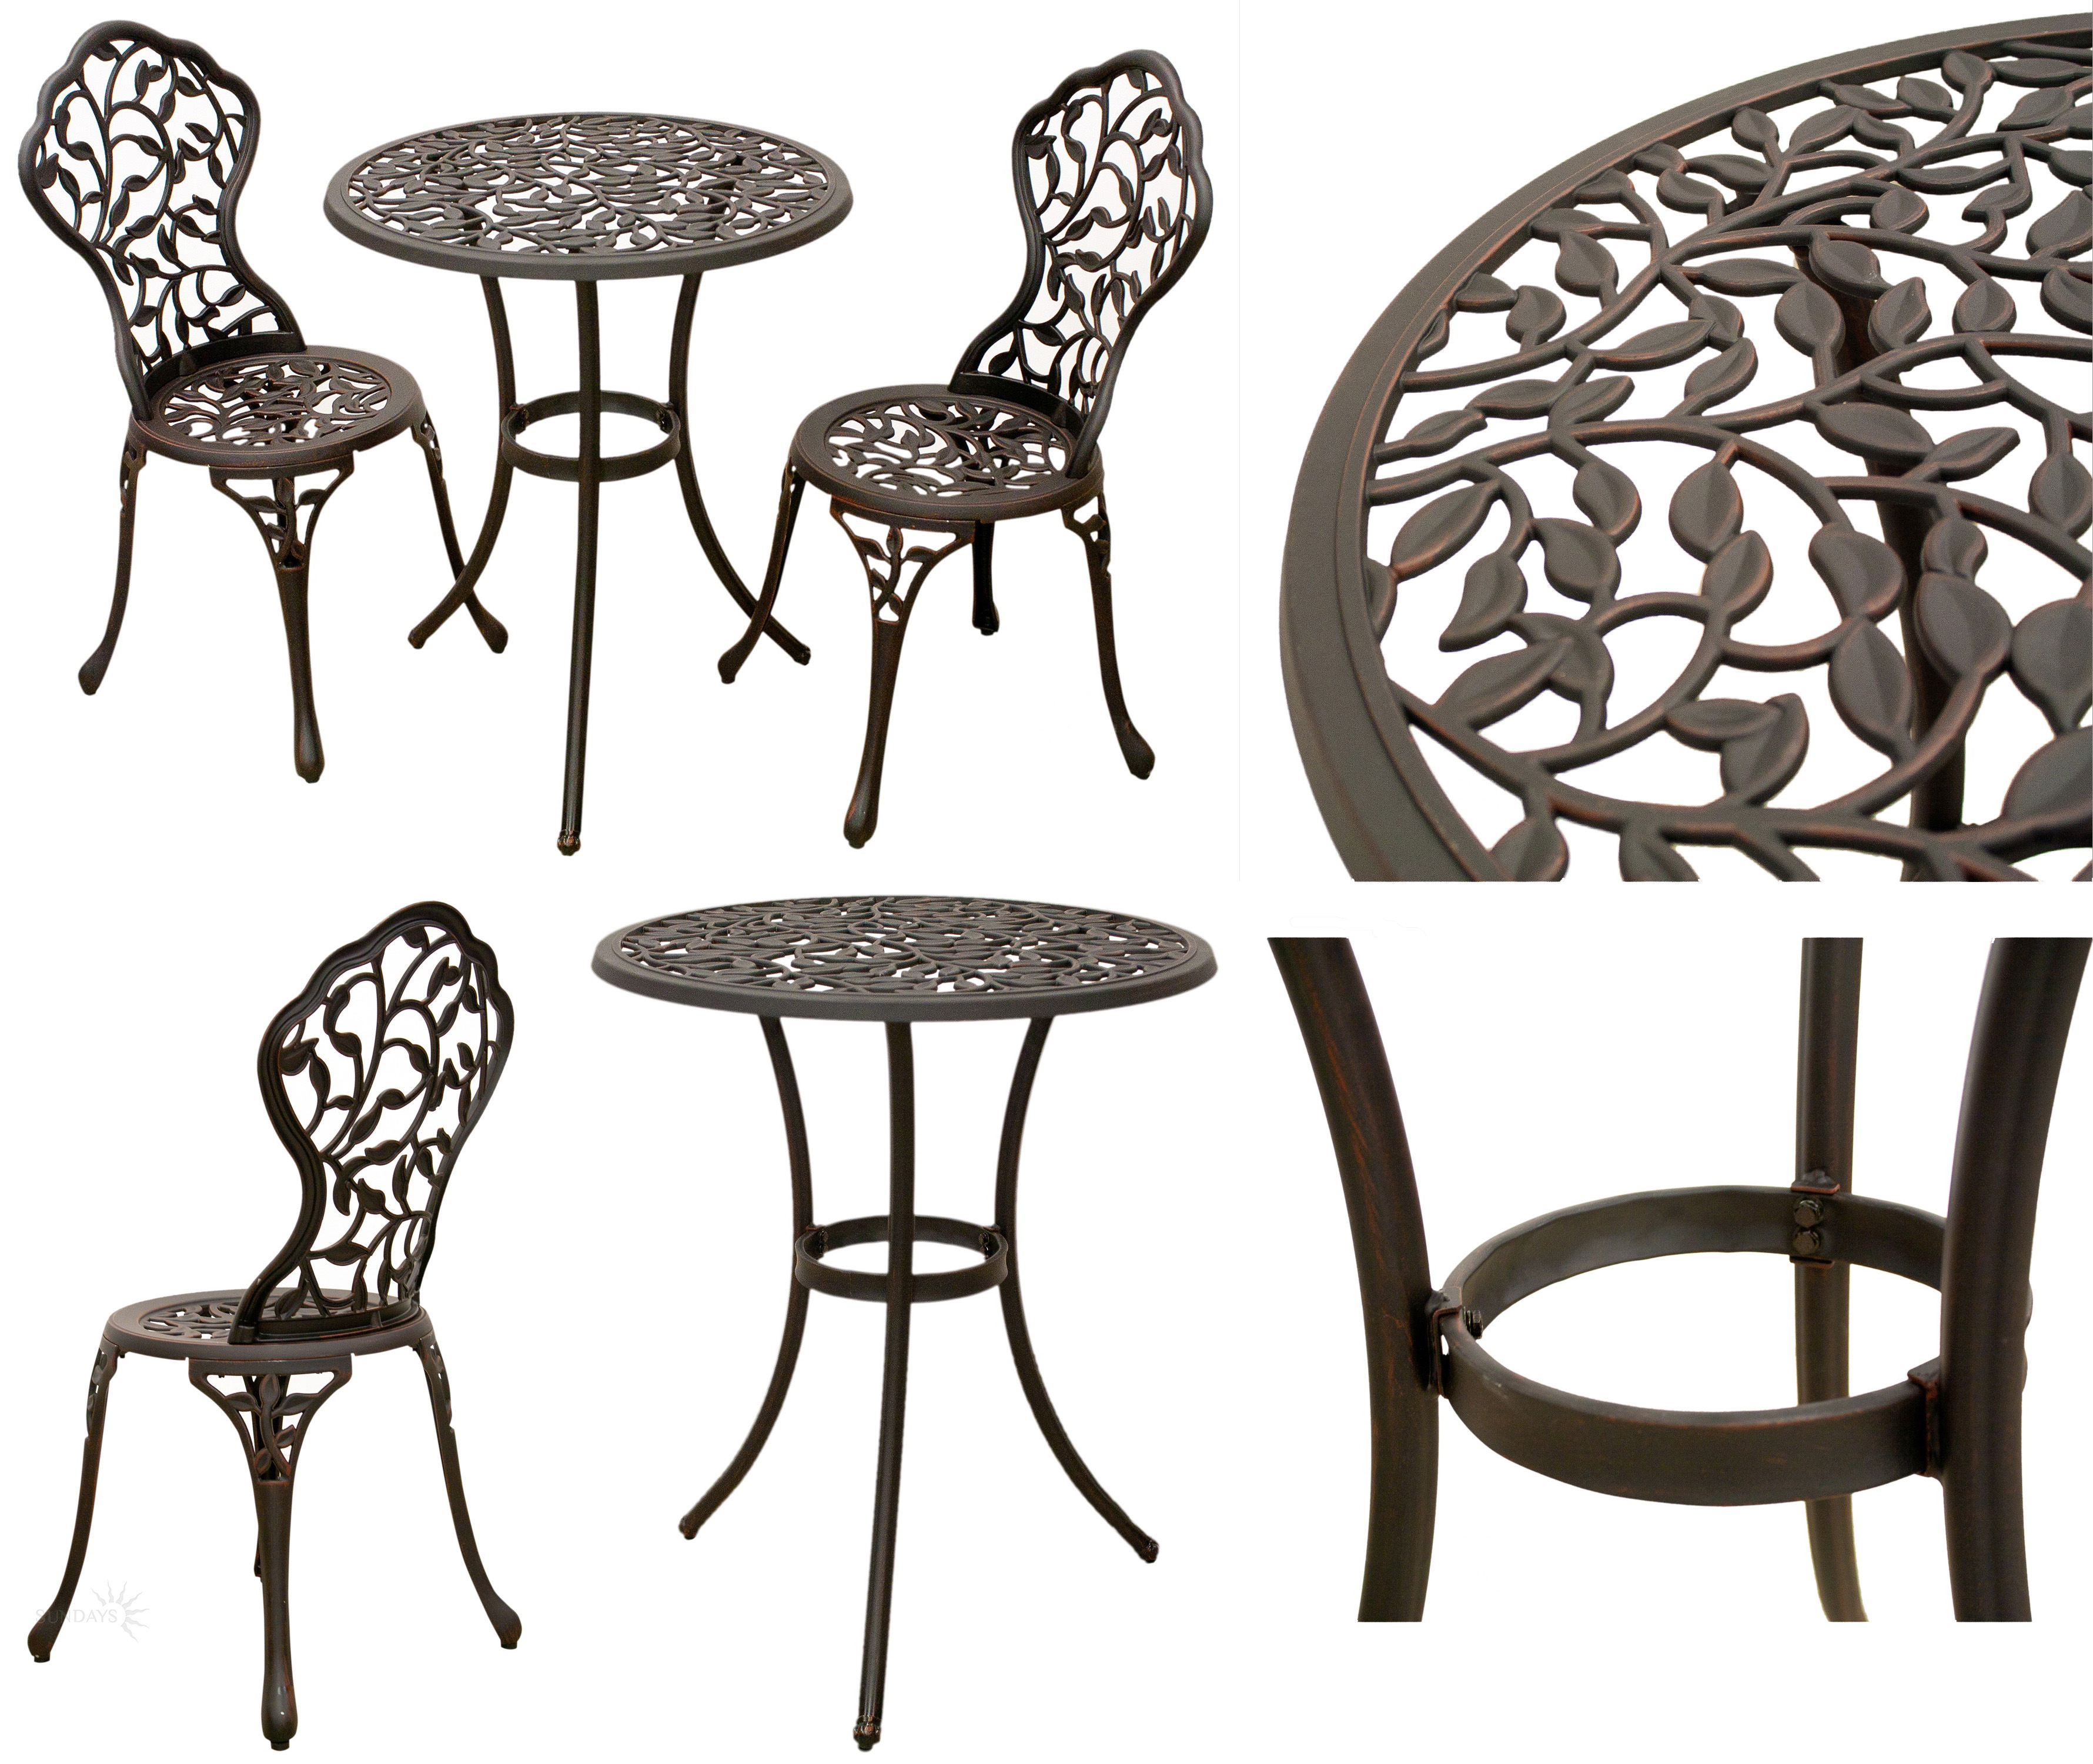 Литая мебель из алюминия Лиана. Легкосплавное литье. Мебель на балкон литые столы и стулья для двориков патио. Мебель для барбекю.